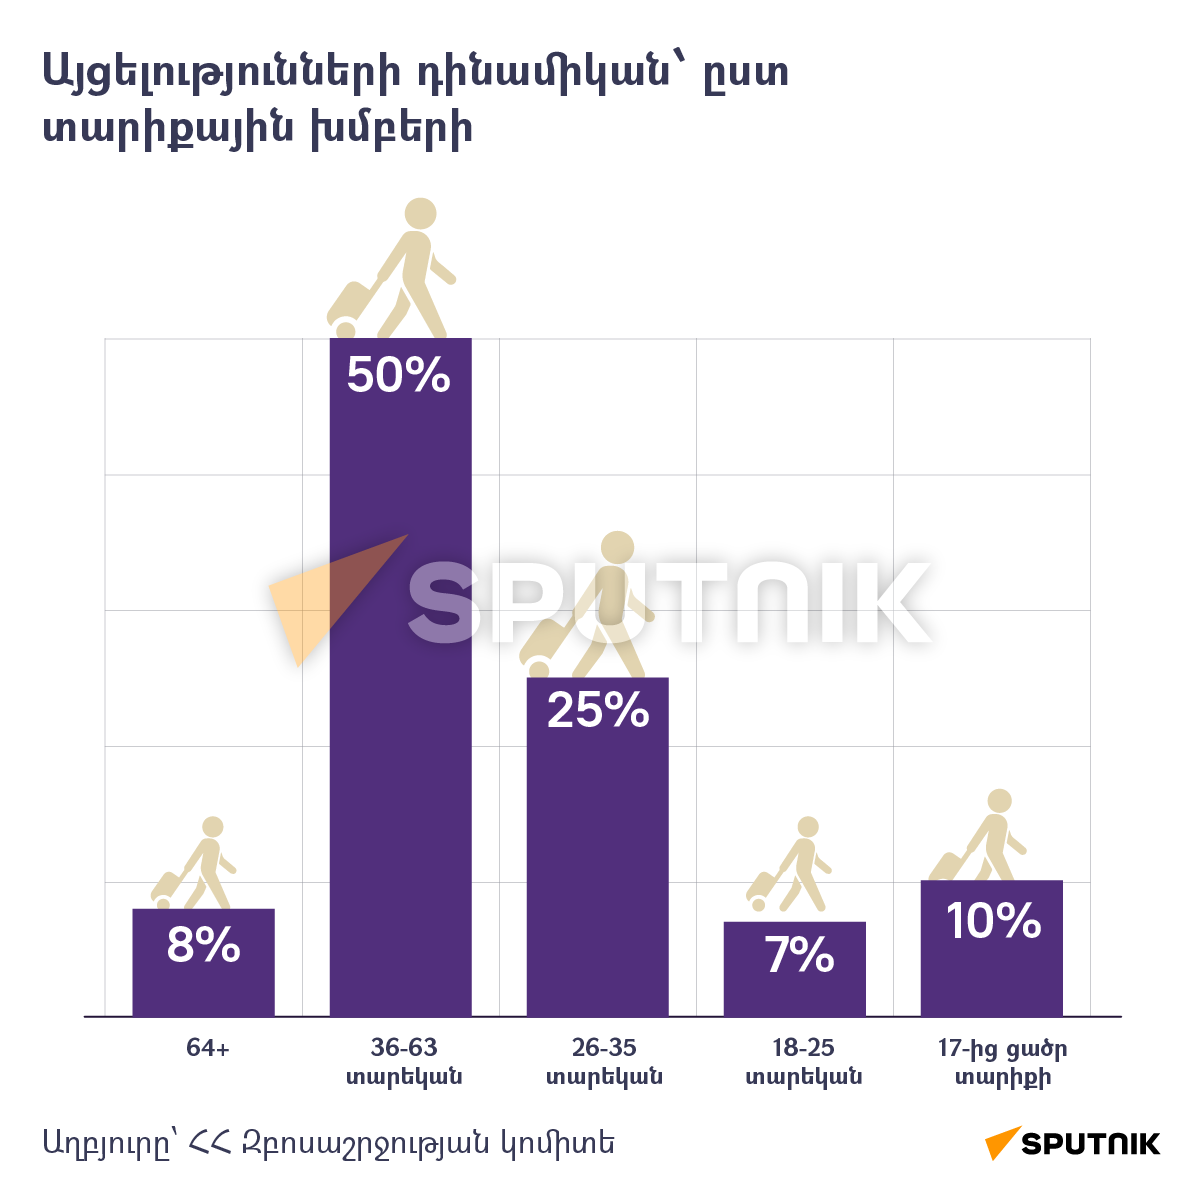 Այցելությունների դինամիկան՝ ըստ տարիքային խմբերի - Sputnik Արմենիա